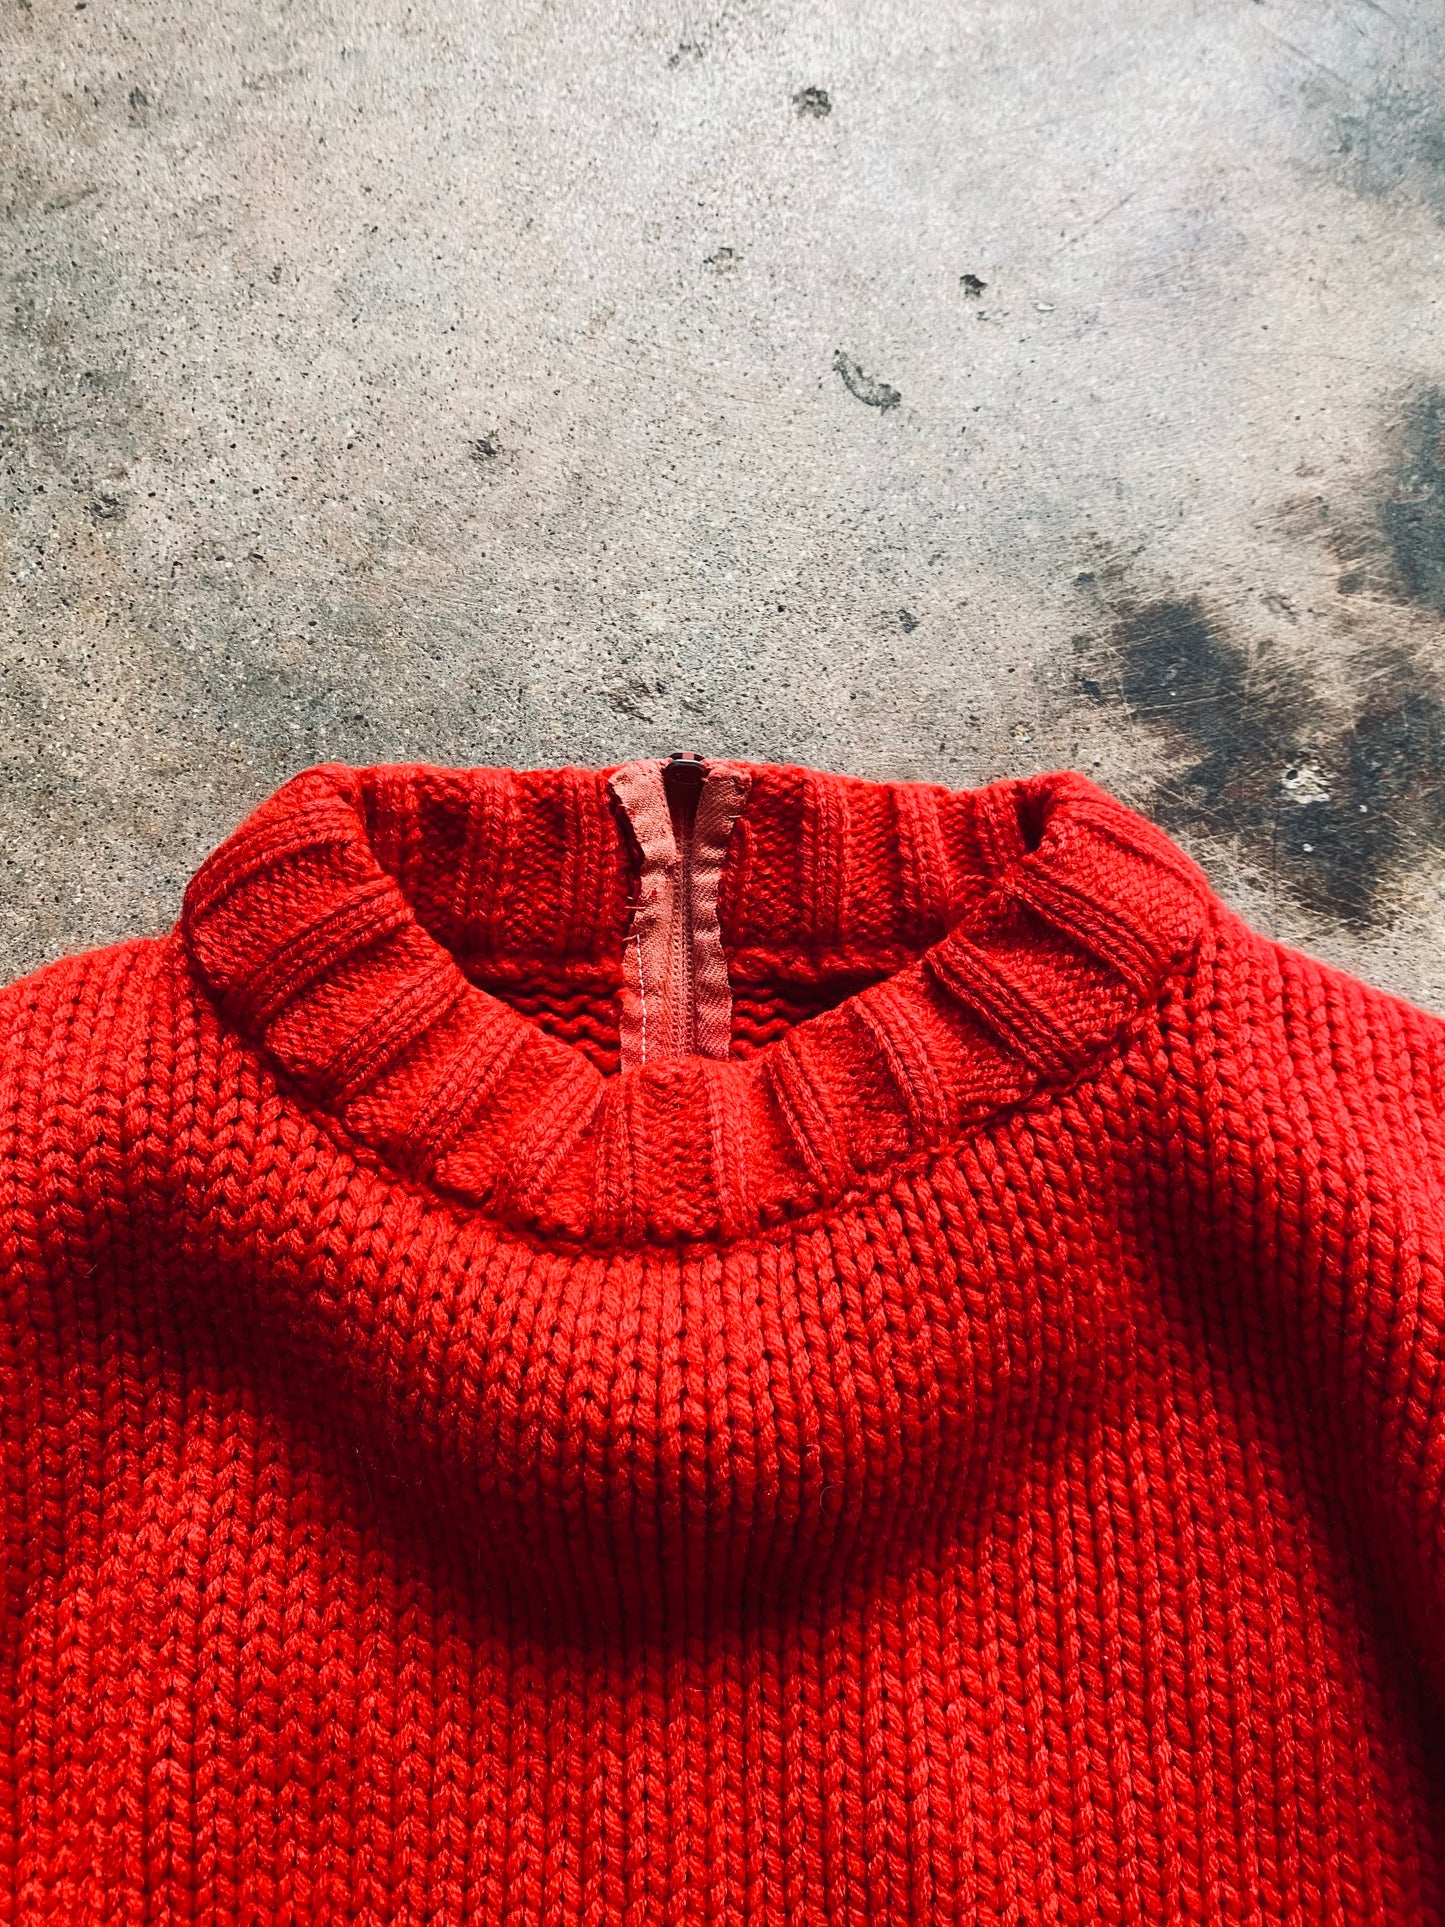 1980s Pocket Knit Sweater | Medium